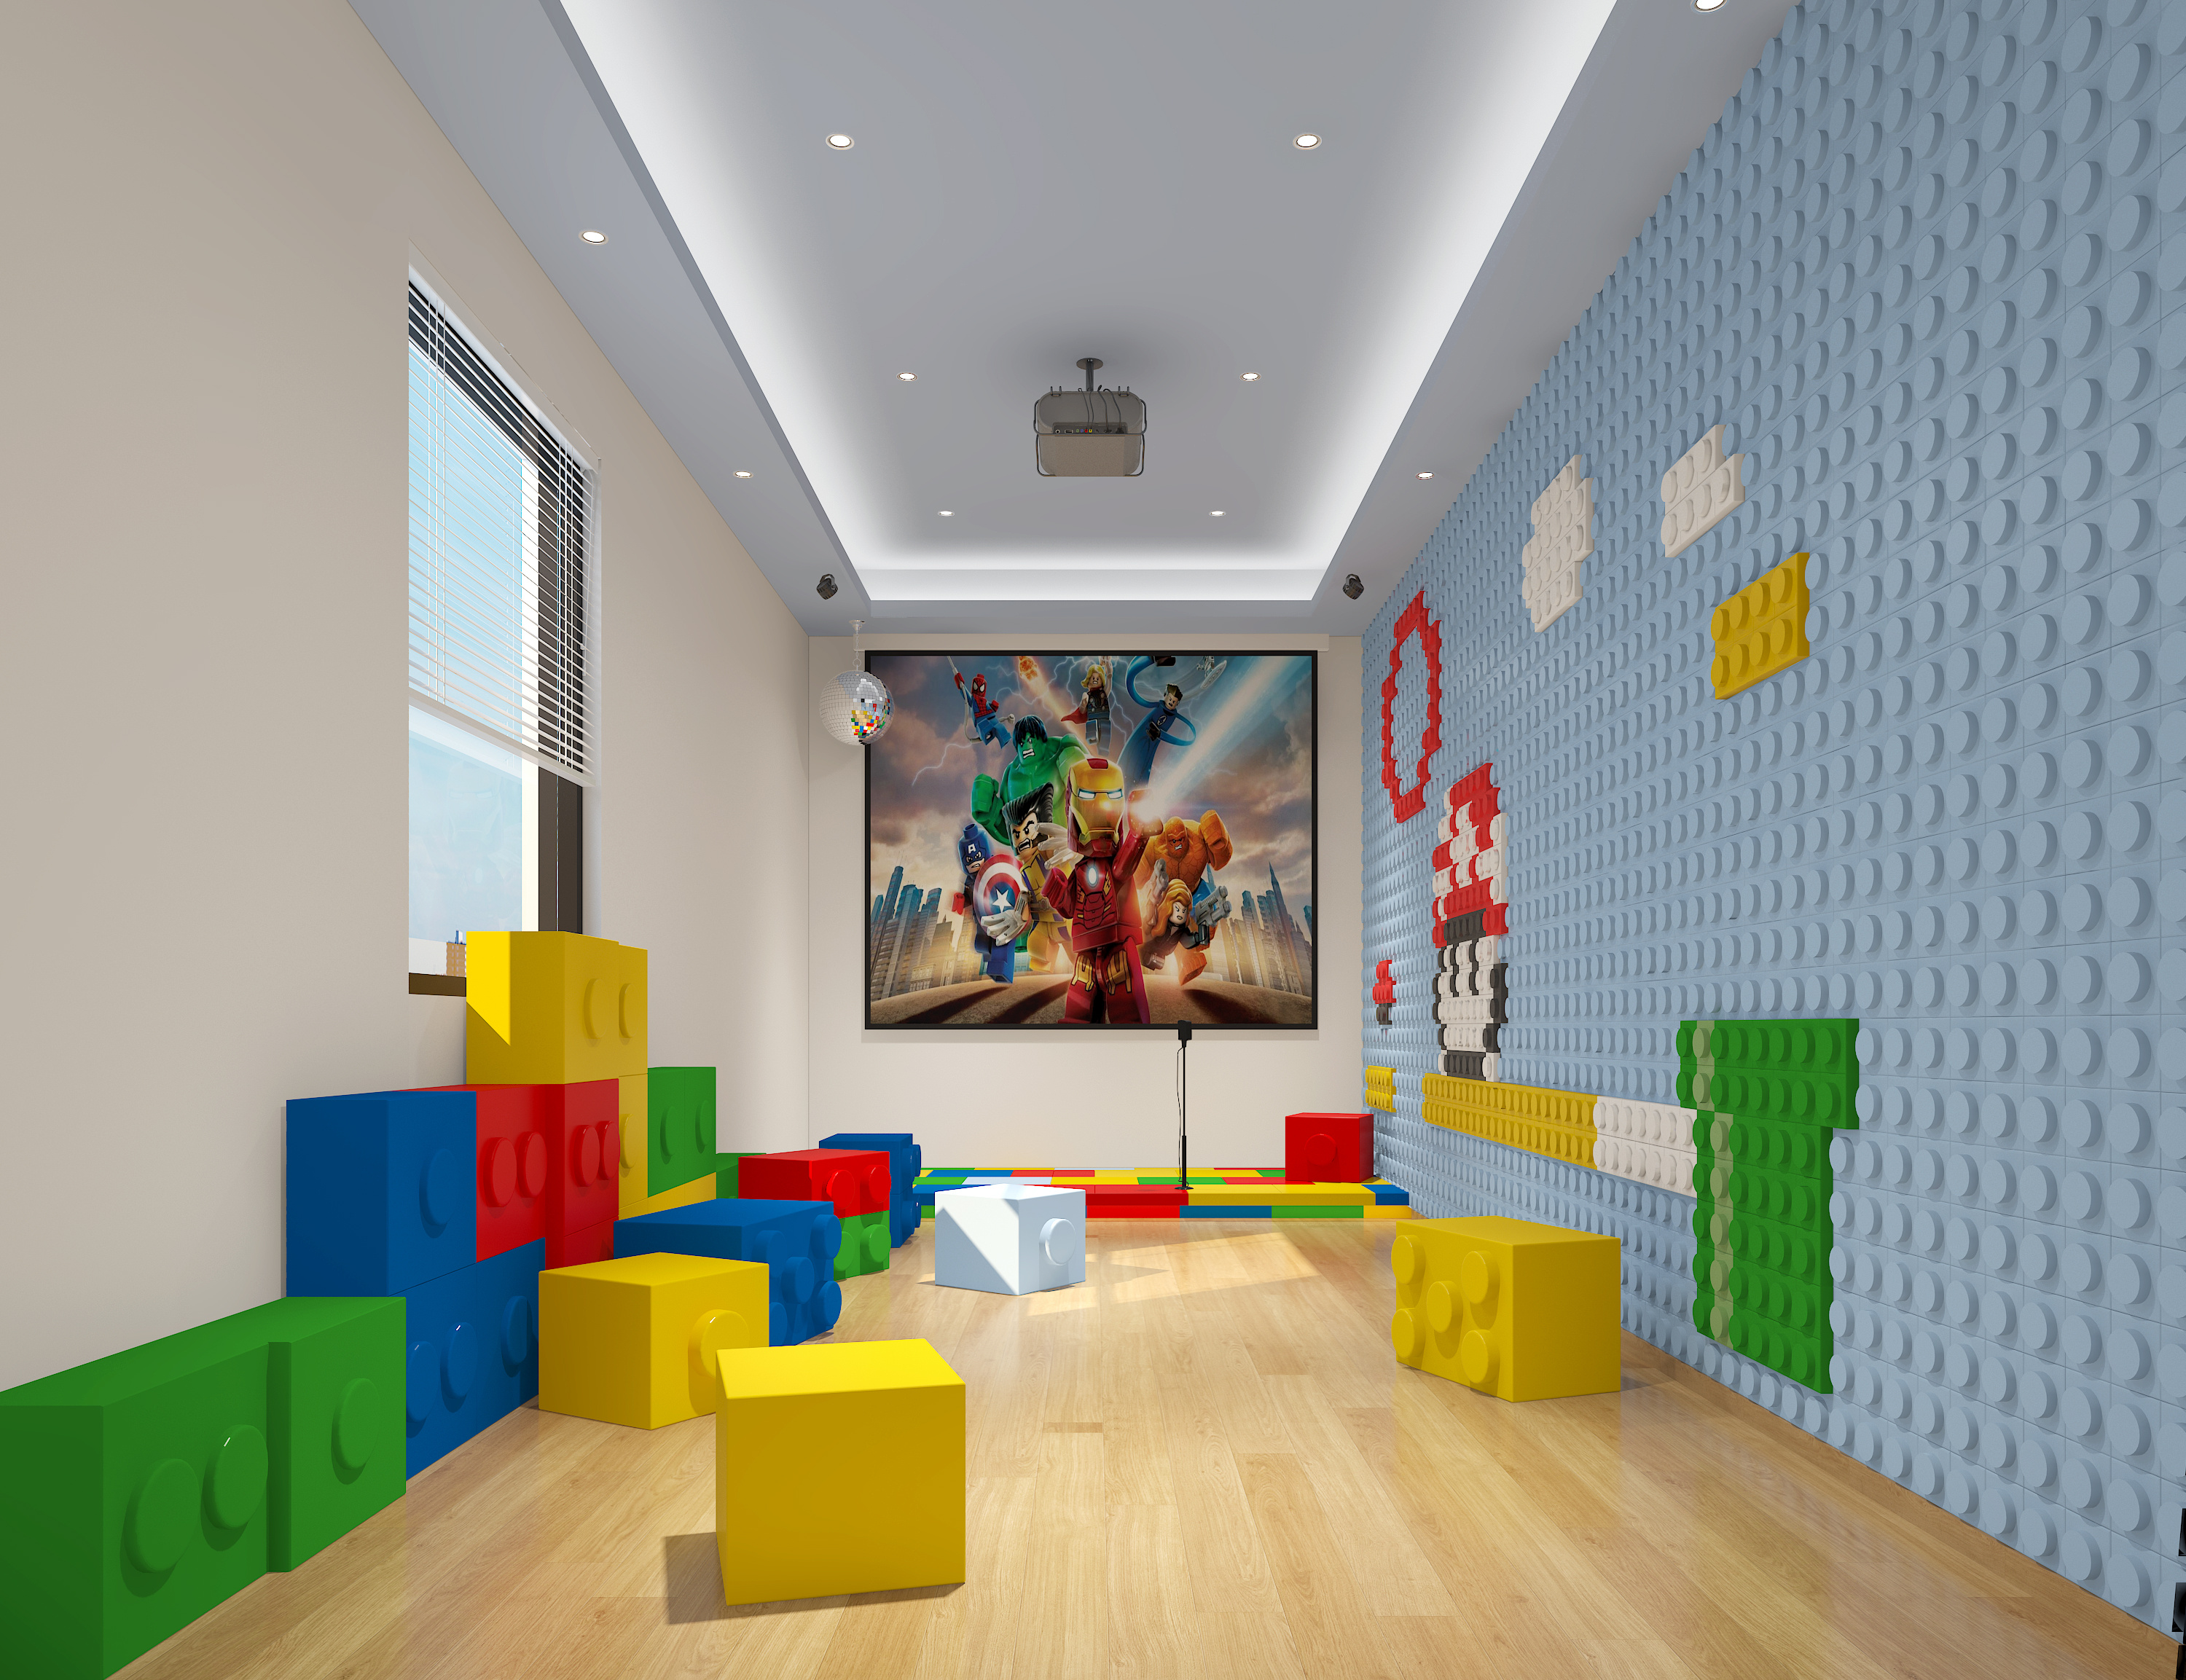 幼儿园主题墙饰设计图片展示 – 设计本装修效果图